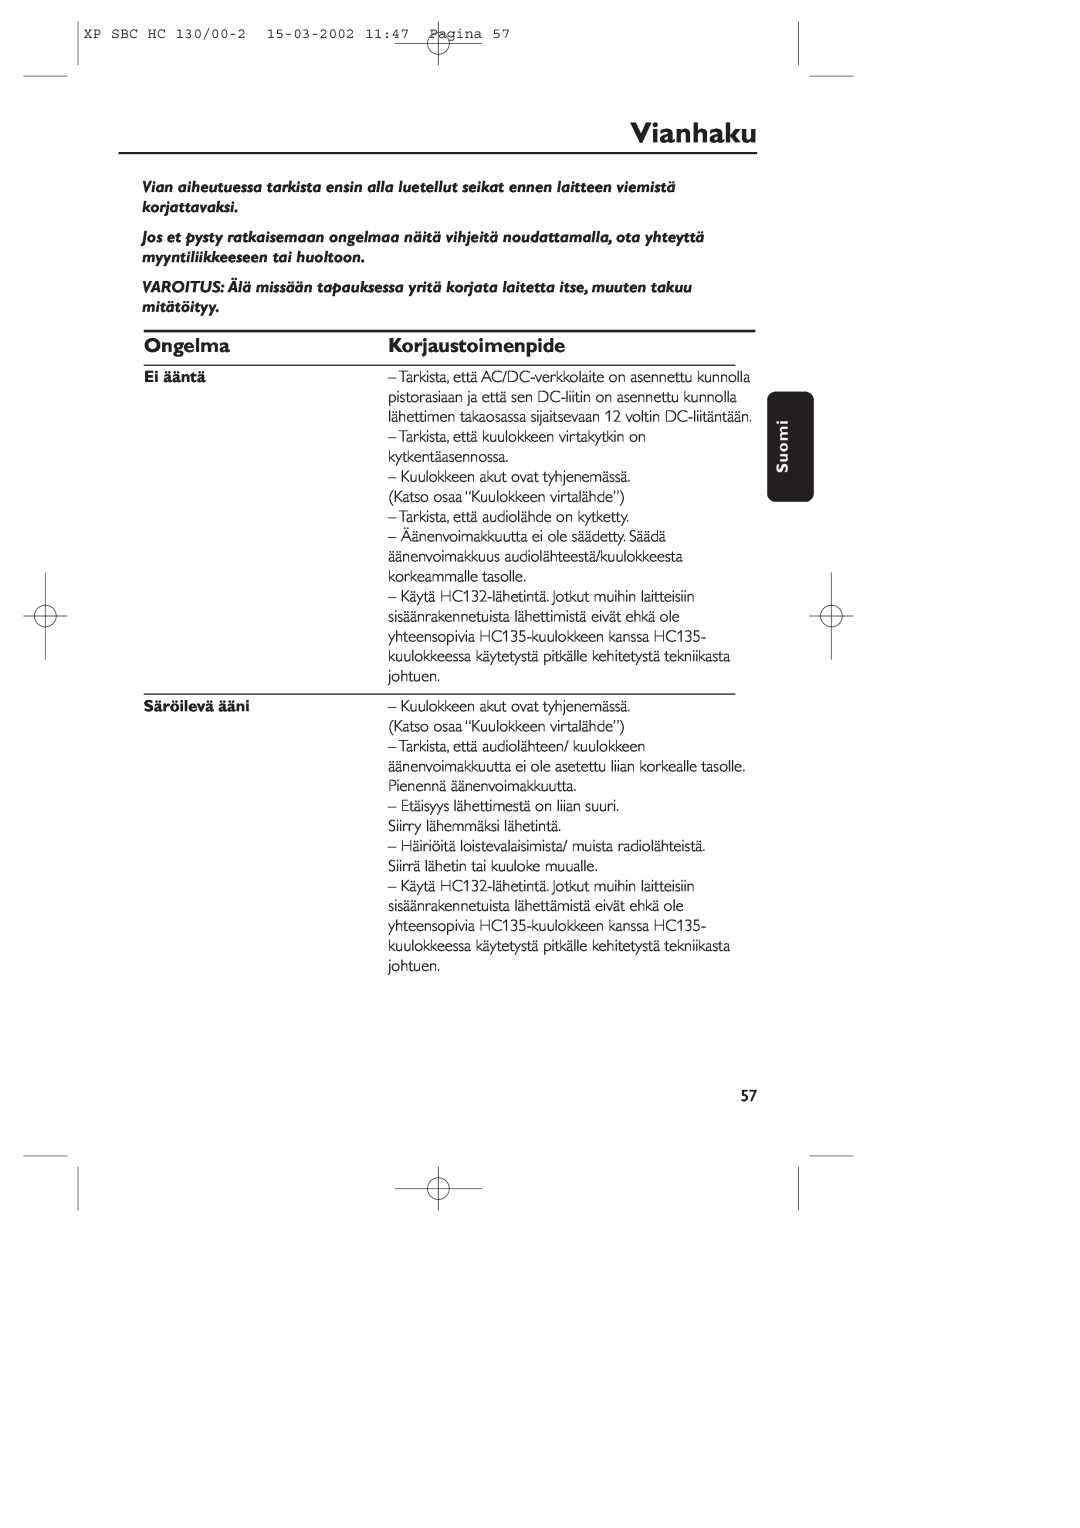 Philips SBC HC130 manual Vianhaku, Ongelma, Korjaustoimenpide, Ei ääntä, Säröilevä ääni, Suomi 